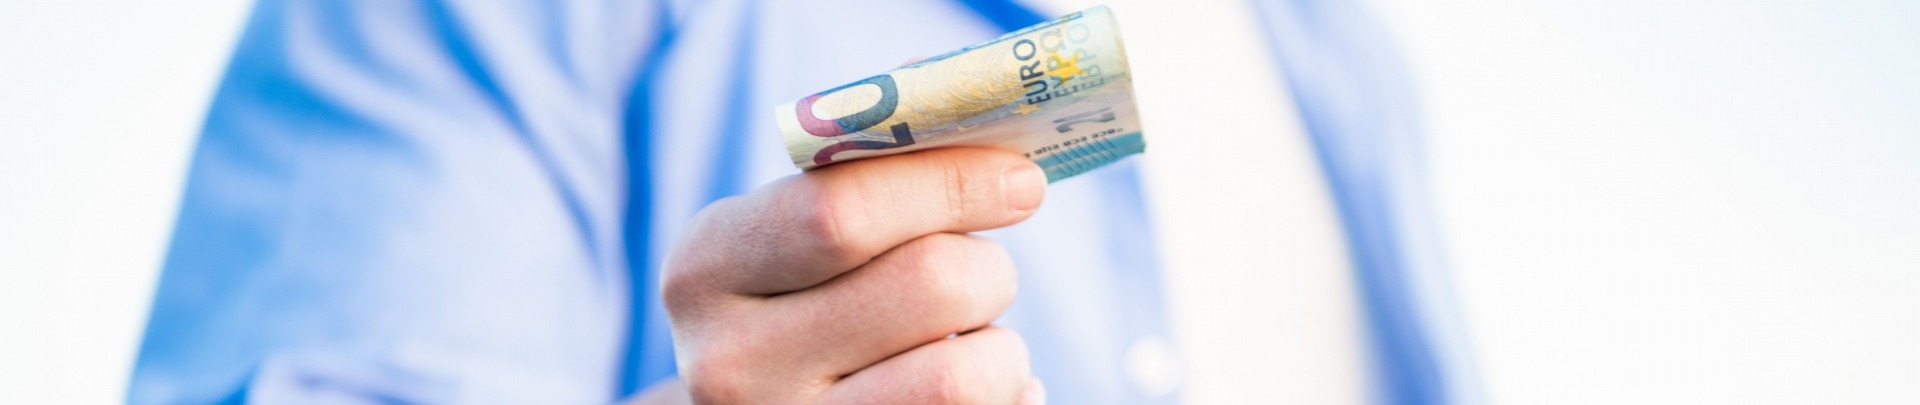 Mannelijke hand die 20 euro biljet vasthoudt